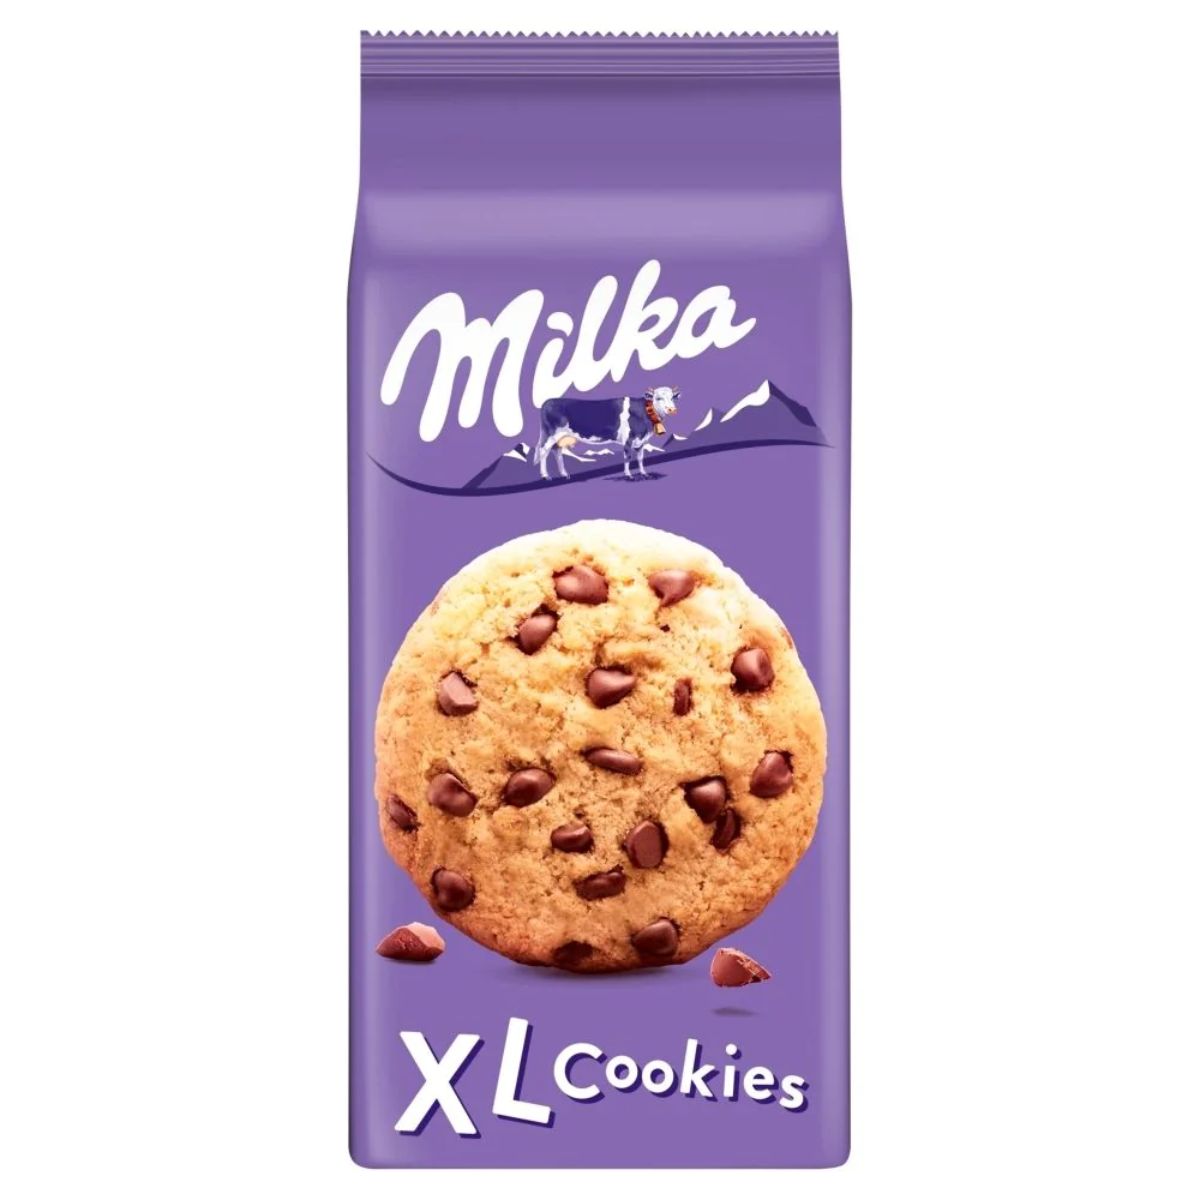 Milka - XL Cookies - 184g chocolate chip cookies.